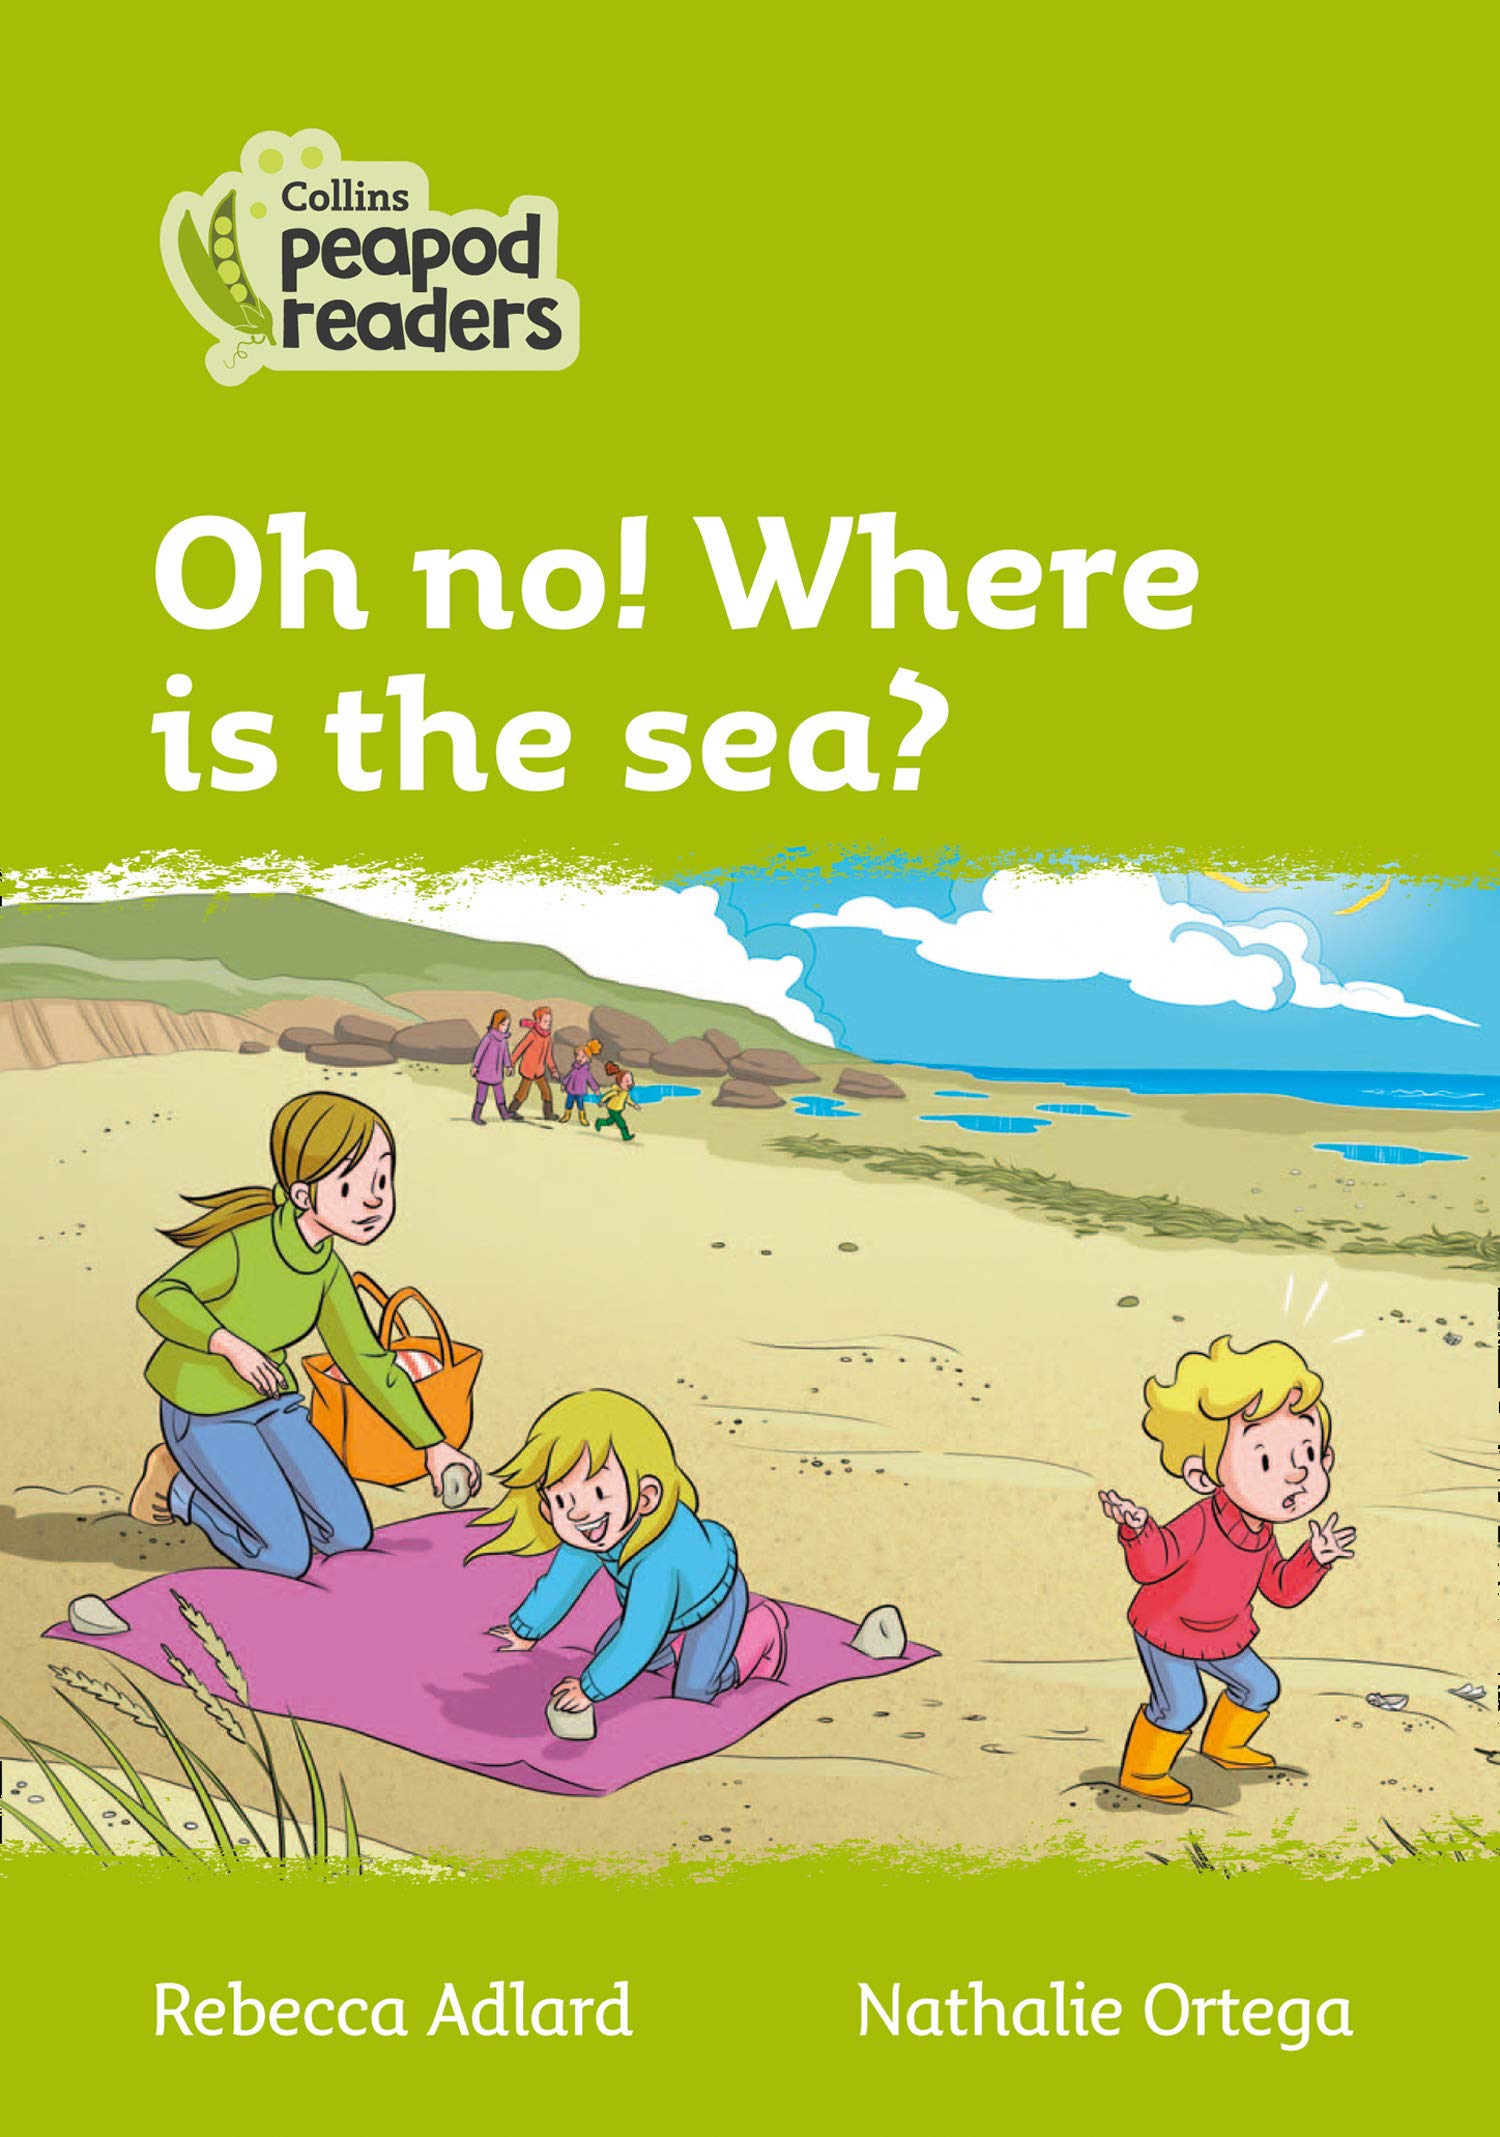 Collins Peapod Readers, Where's the Sea?